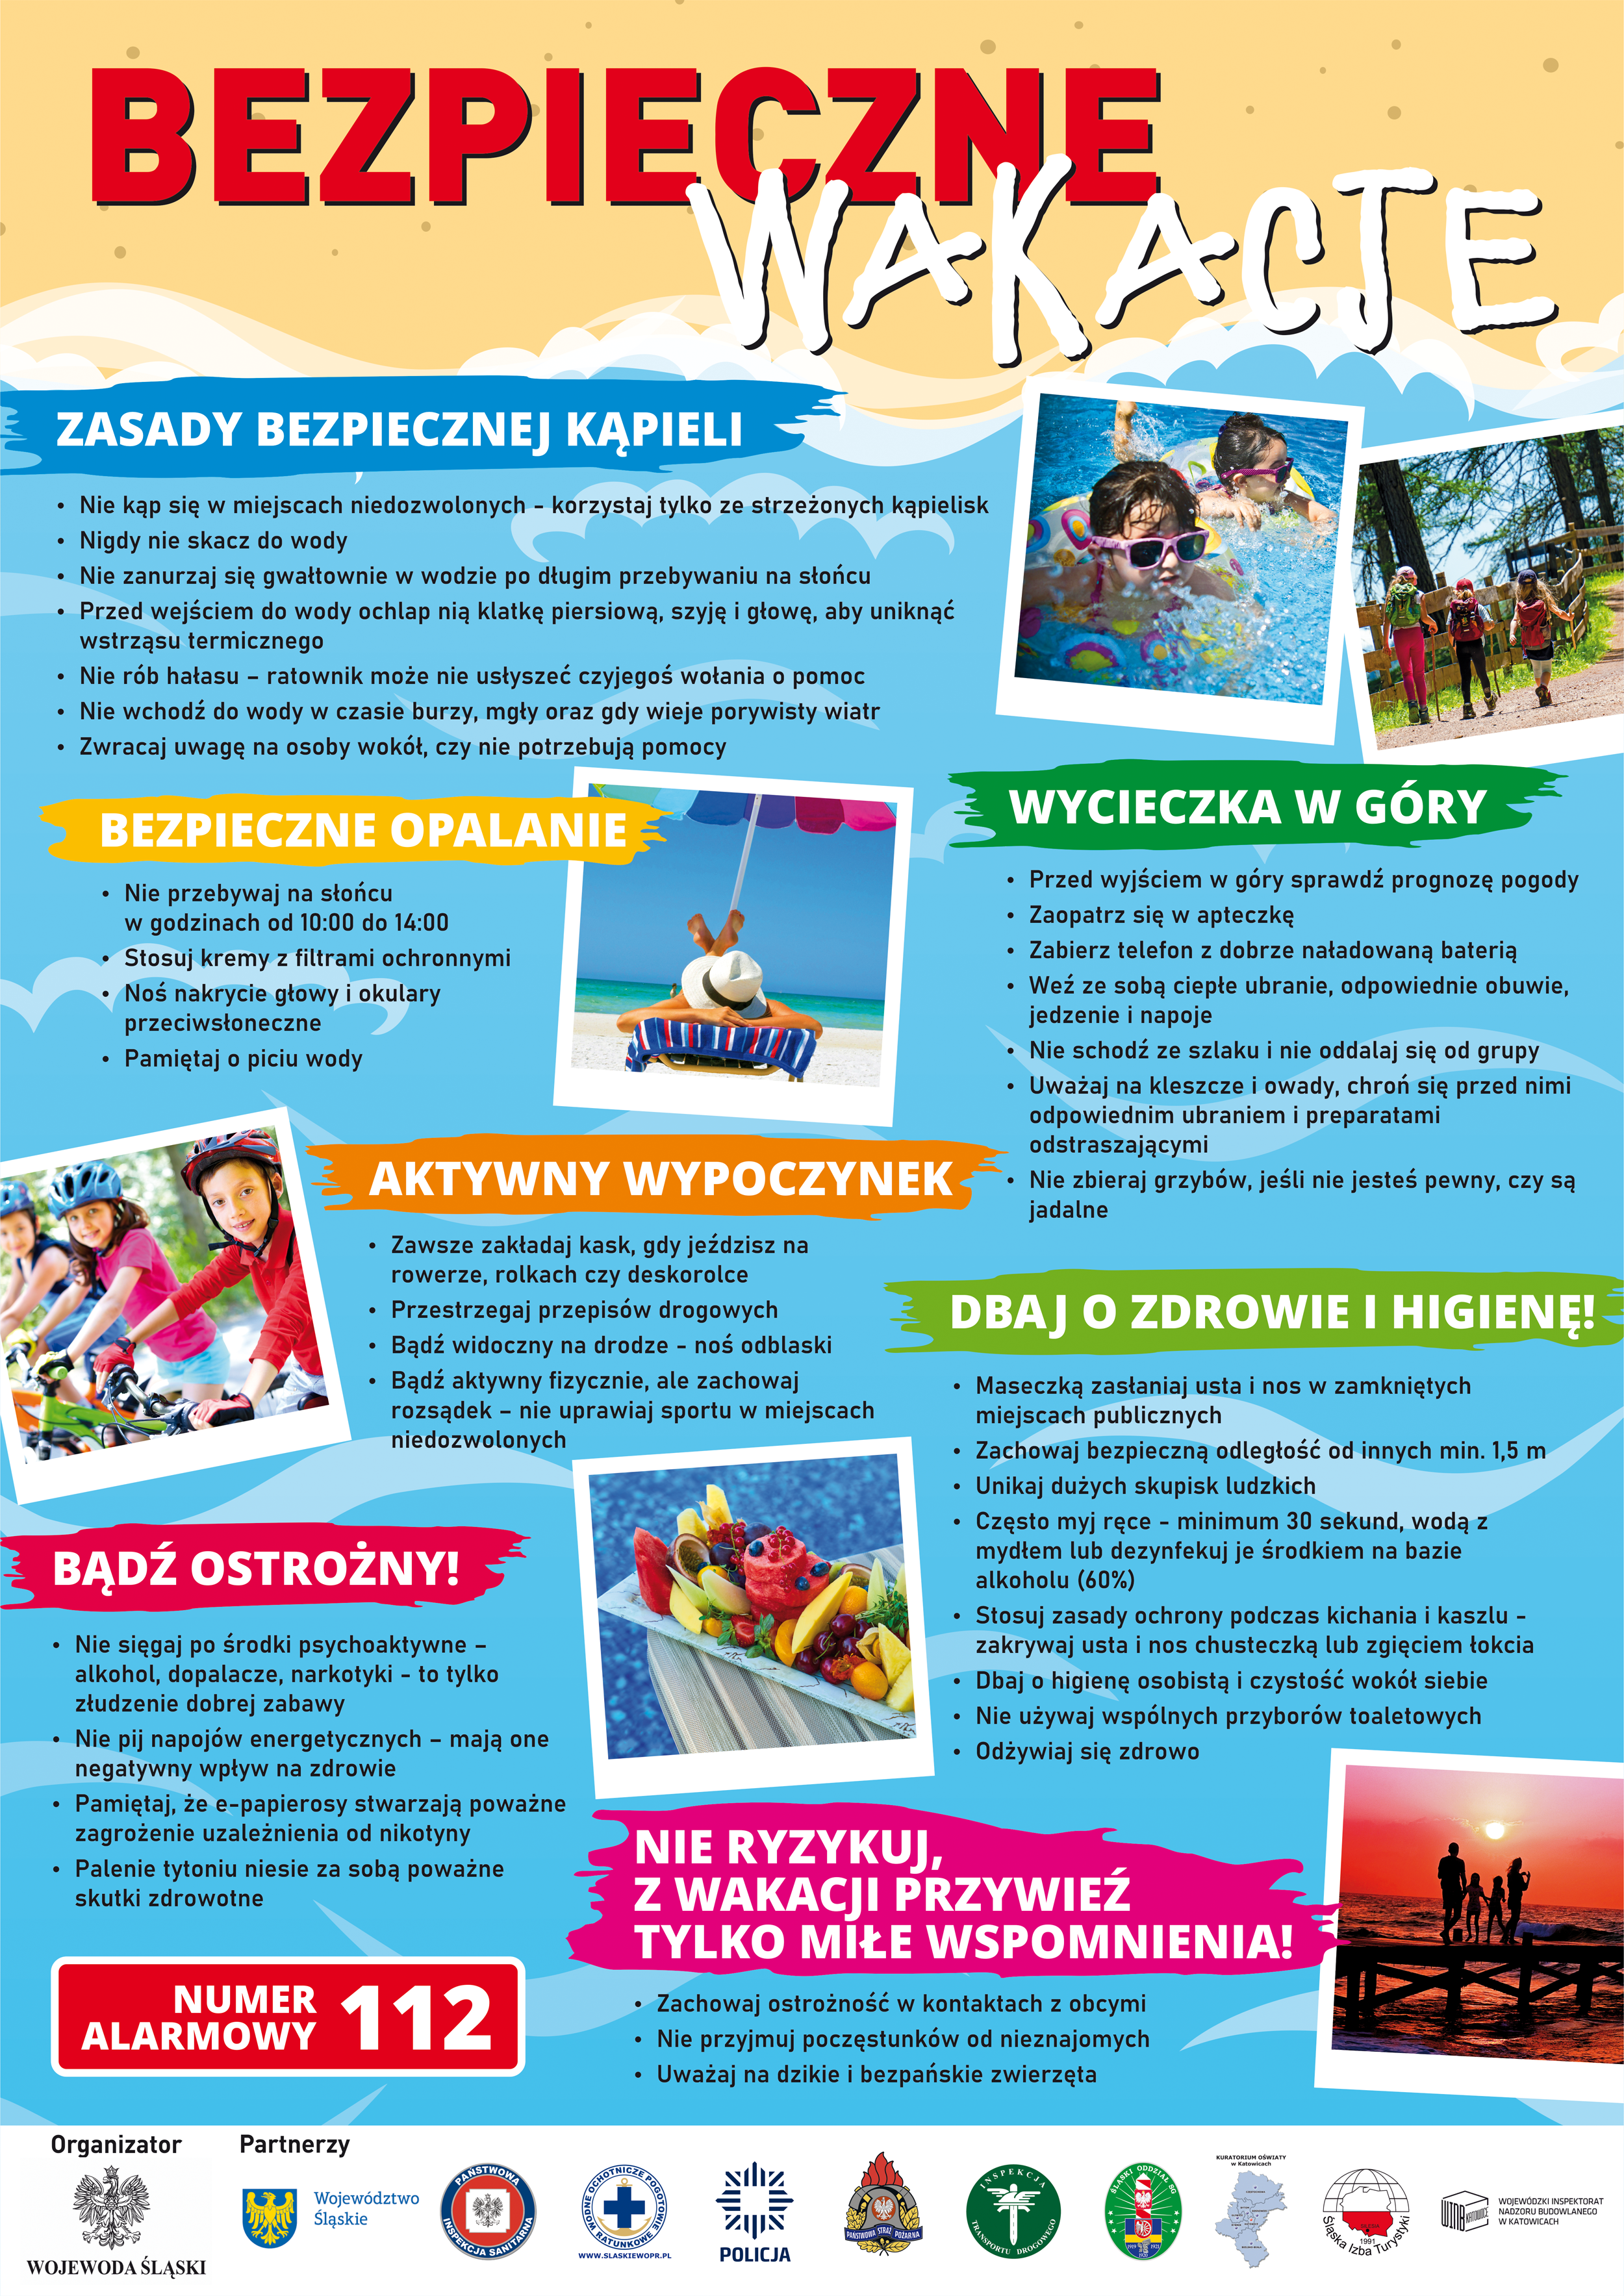 Bezpieczne wakacje 2021 - plakat.png